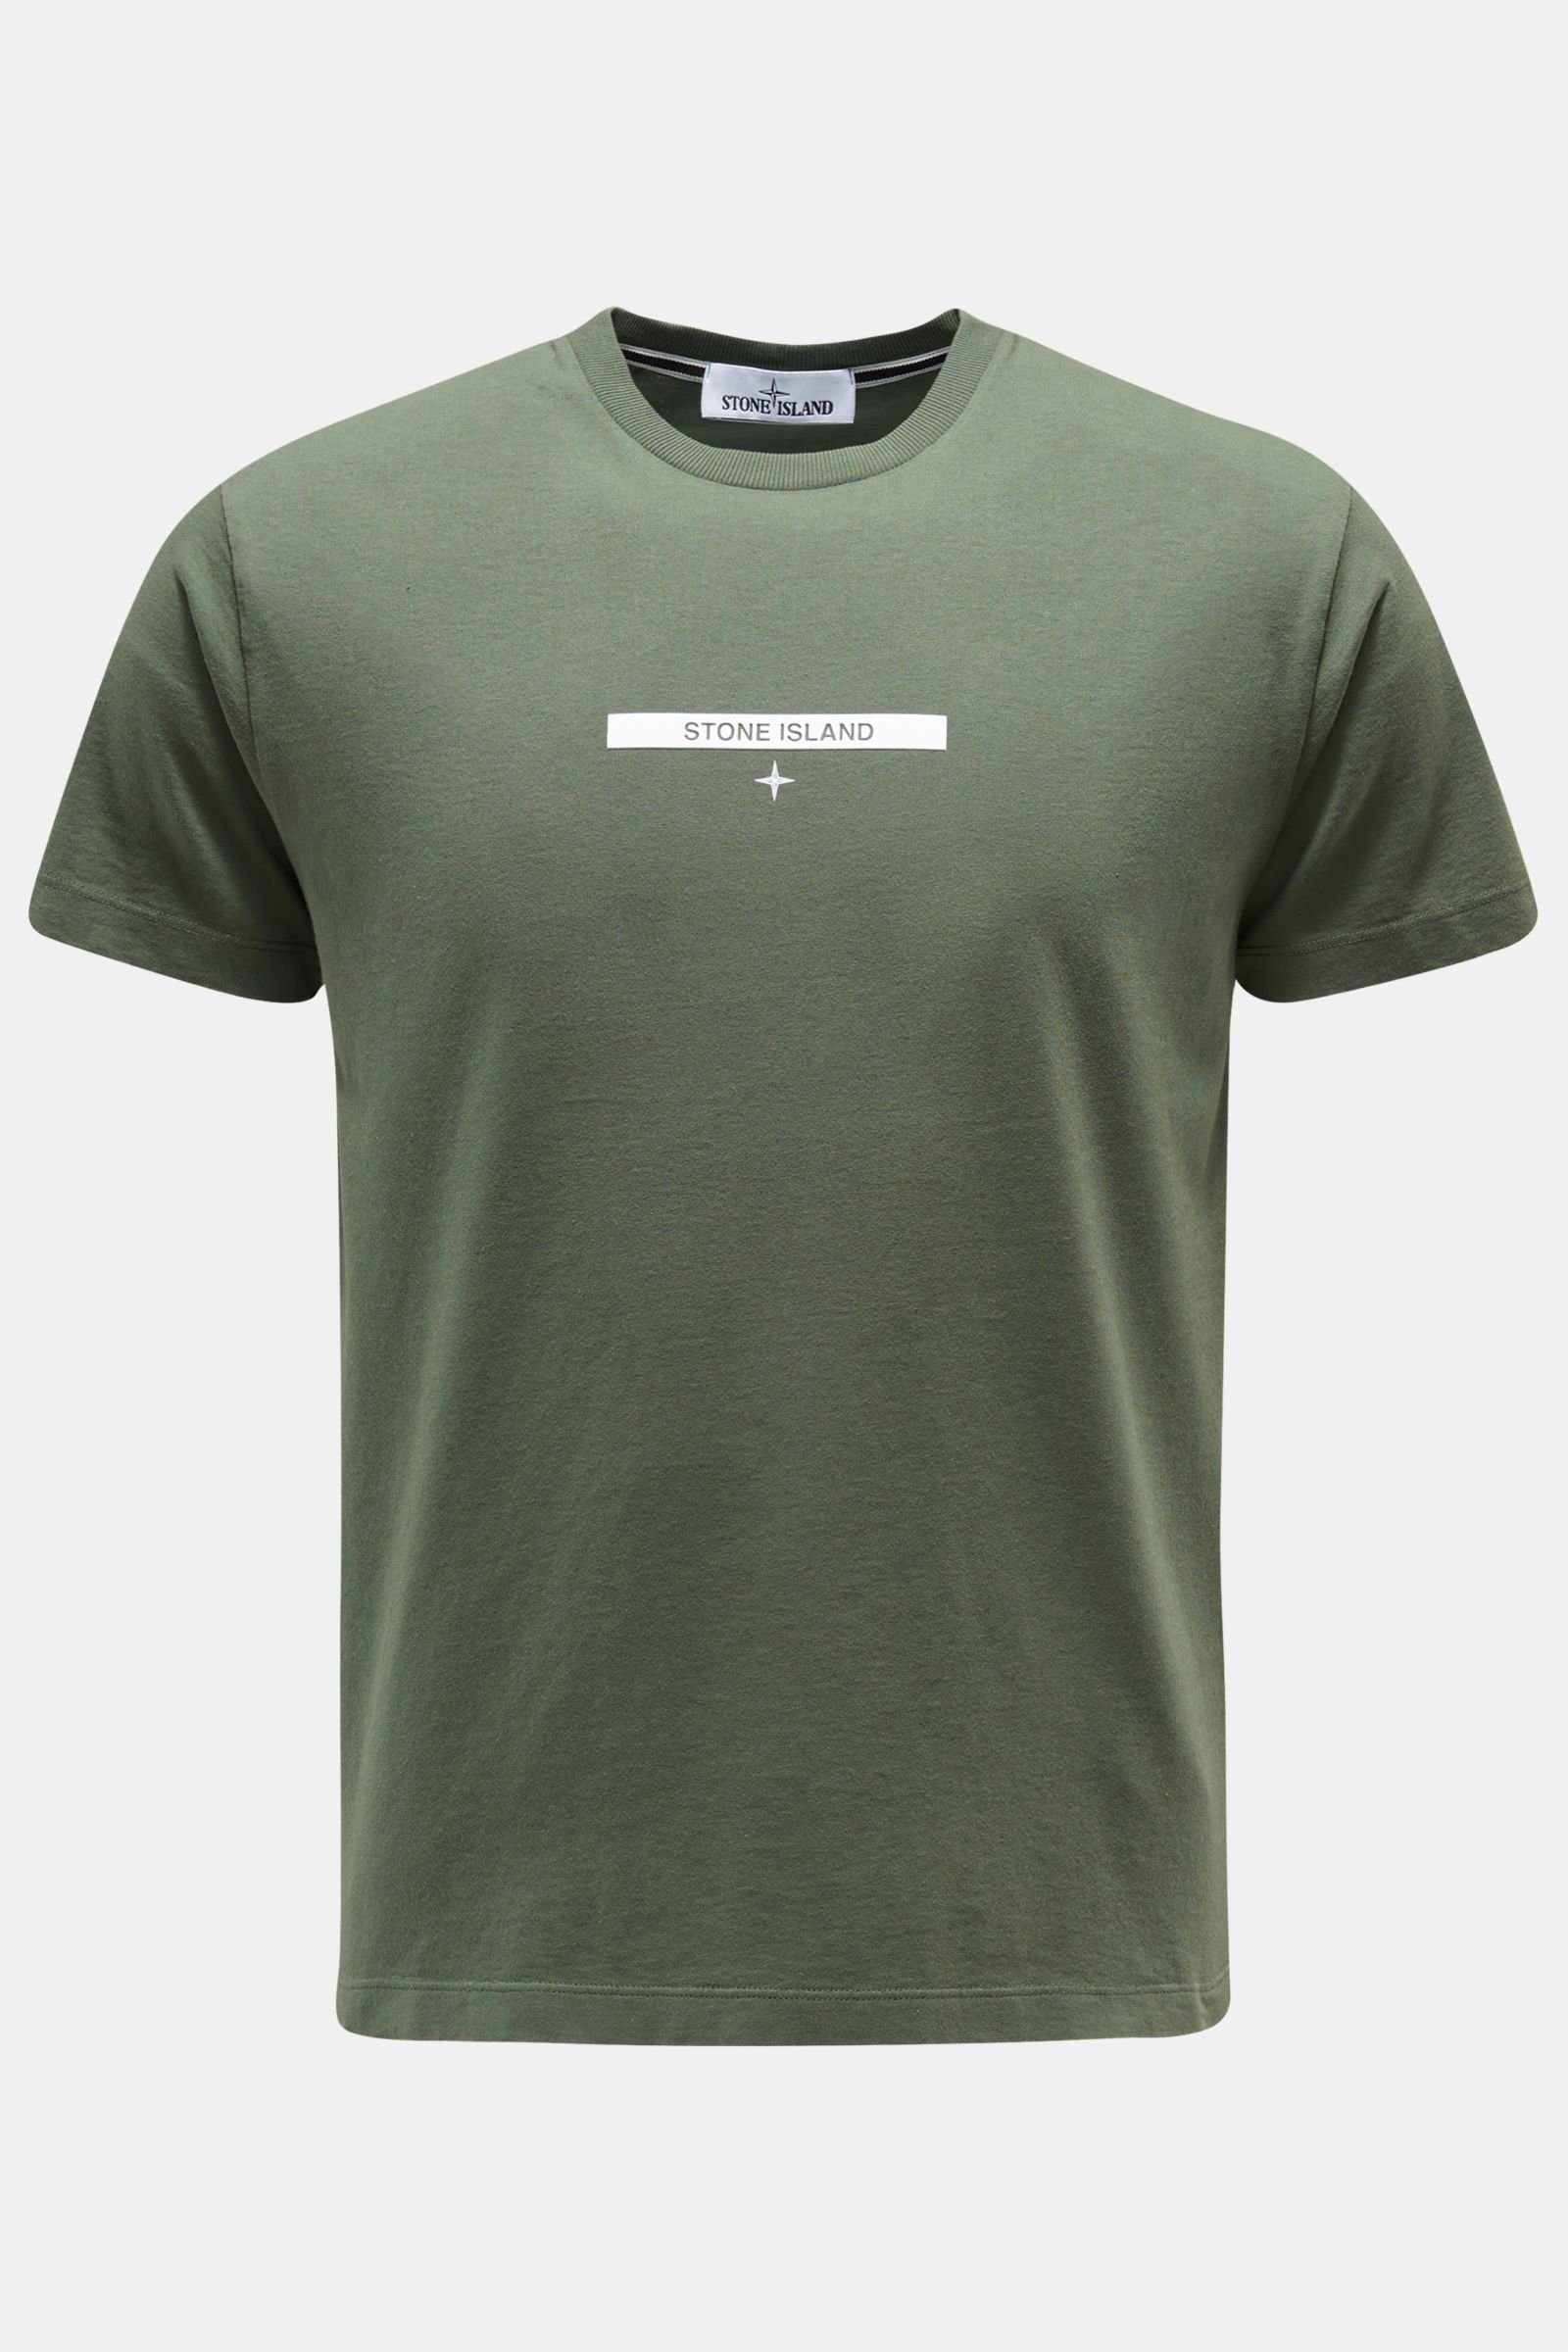 Rundhals-T-Shirt graugrün